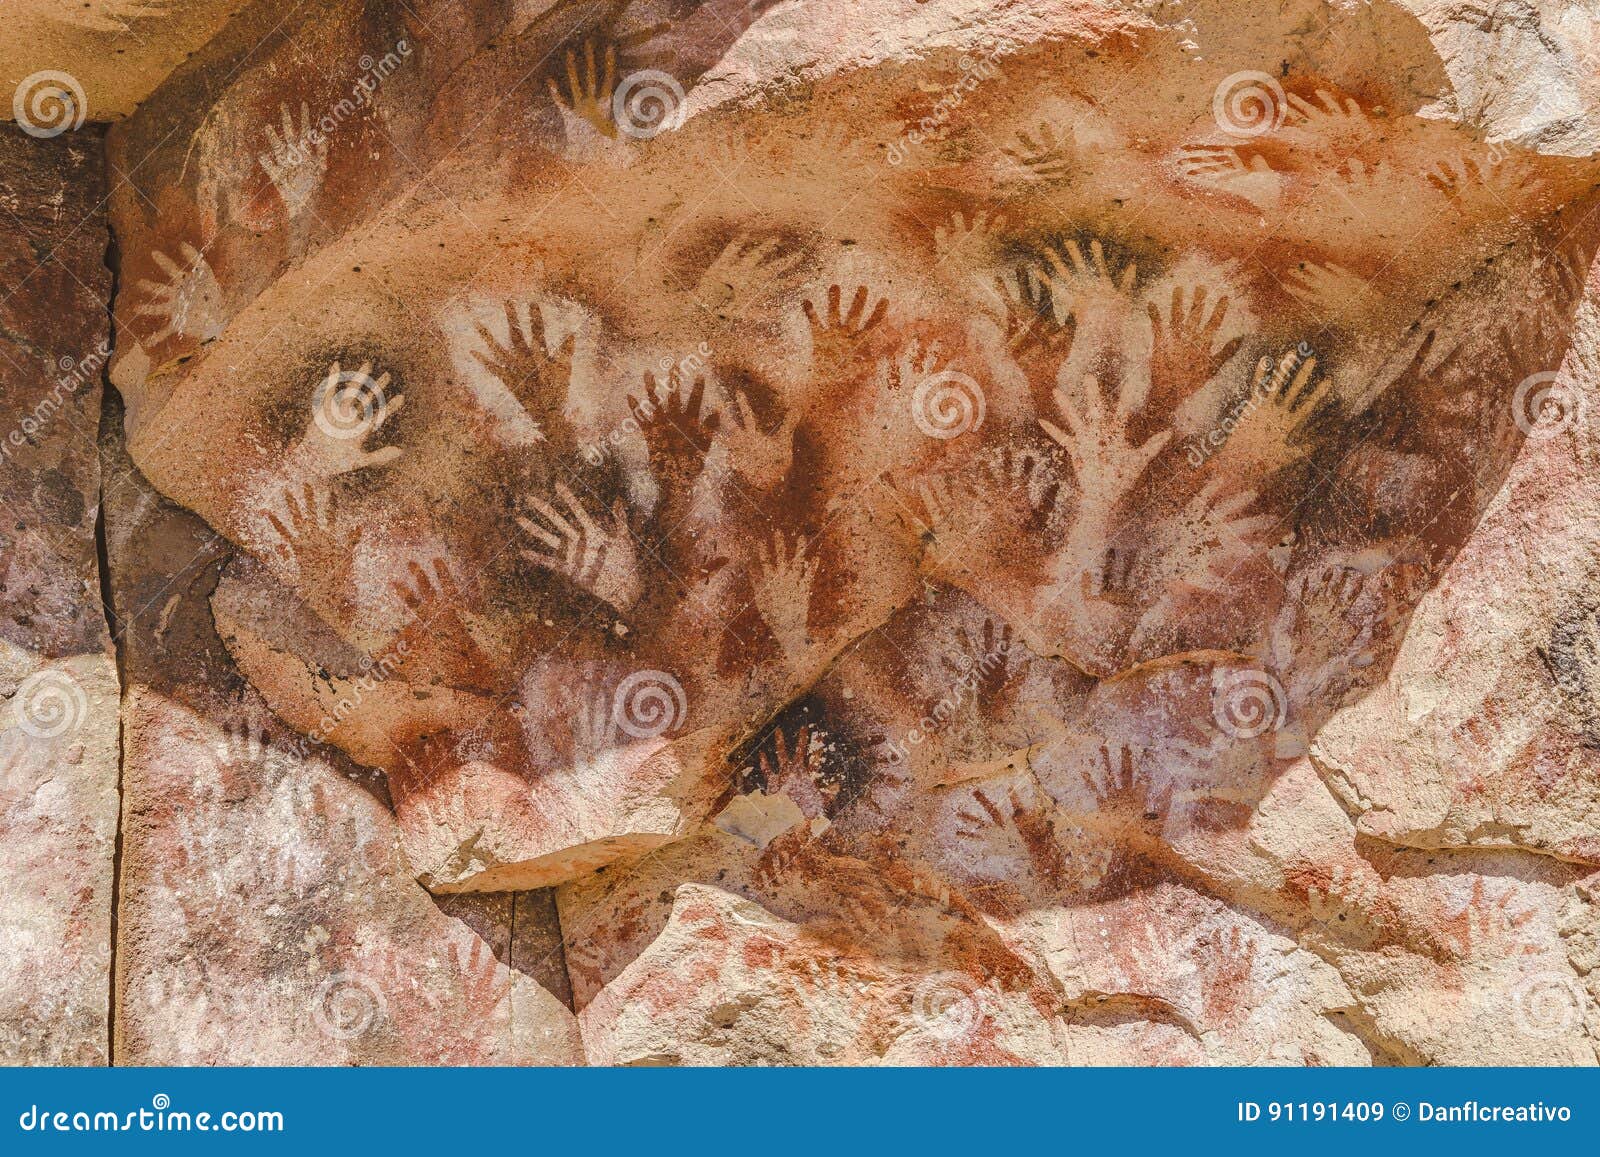 cueva de las manos, patagonia, argentina